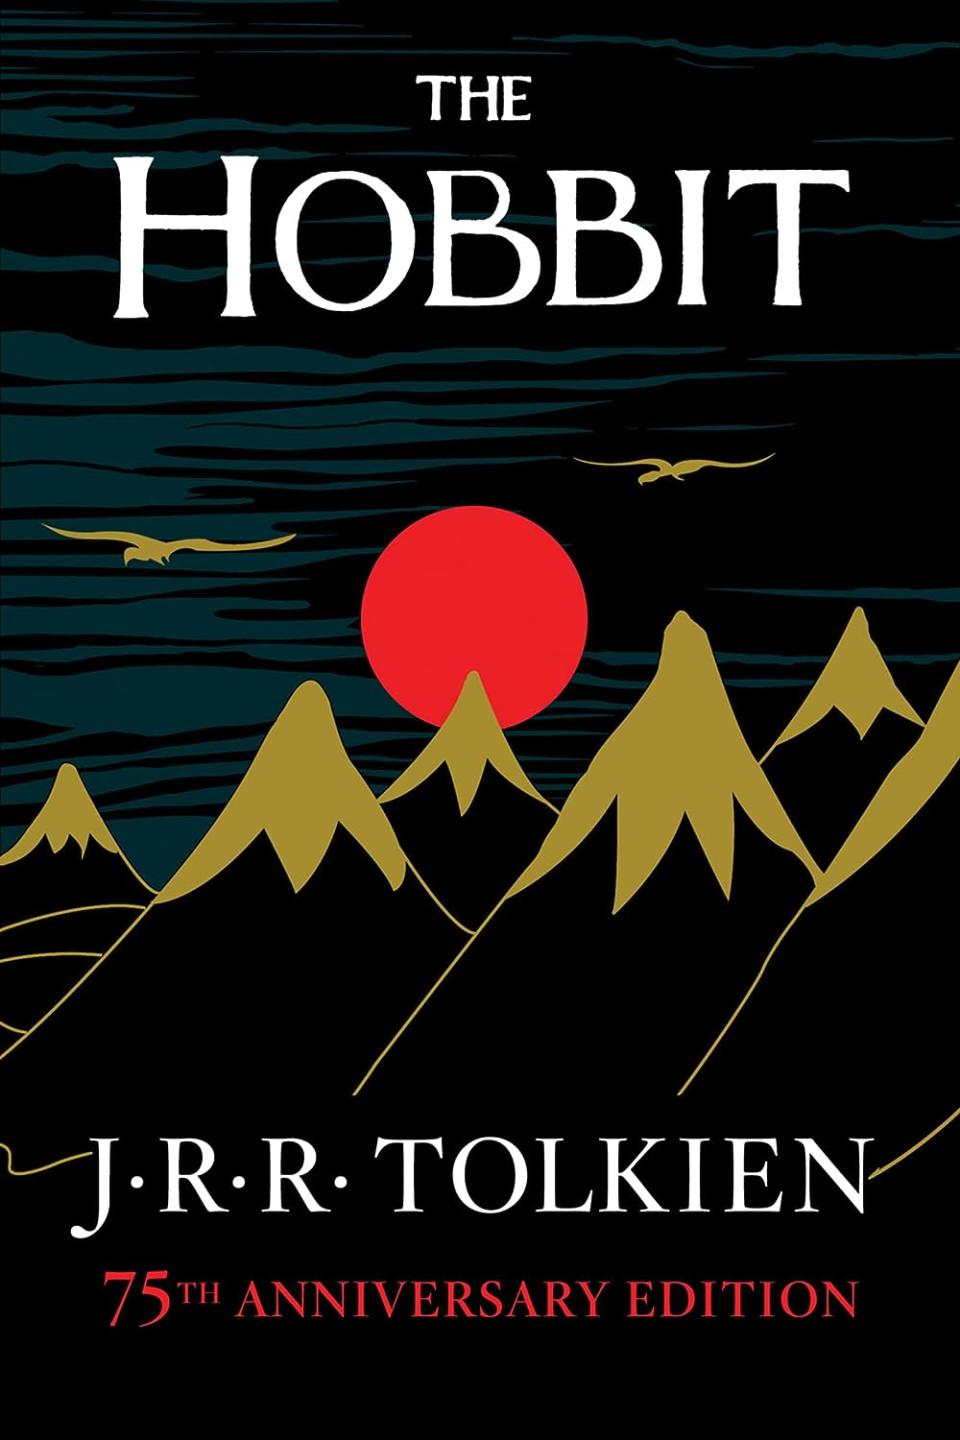 "The Hobbit"